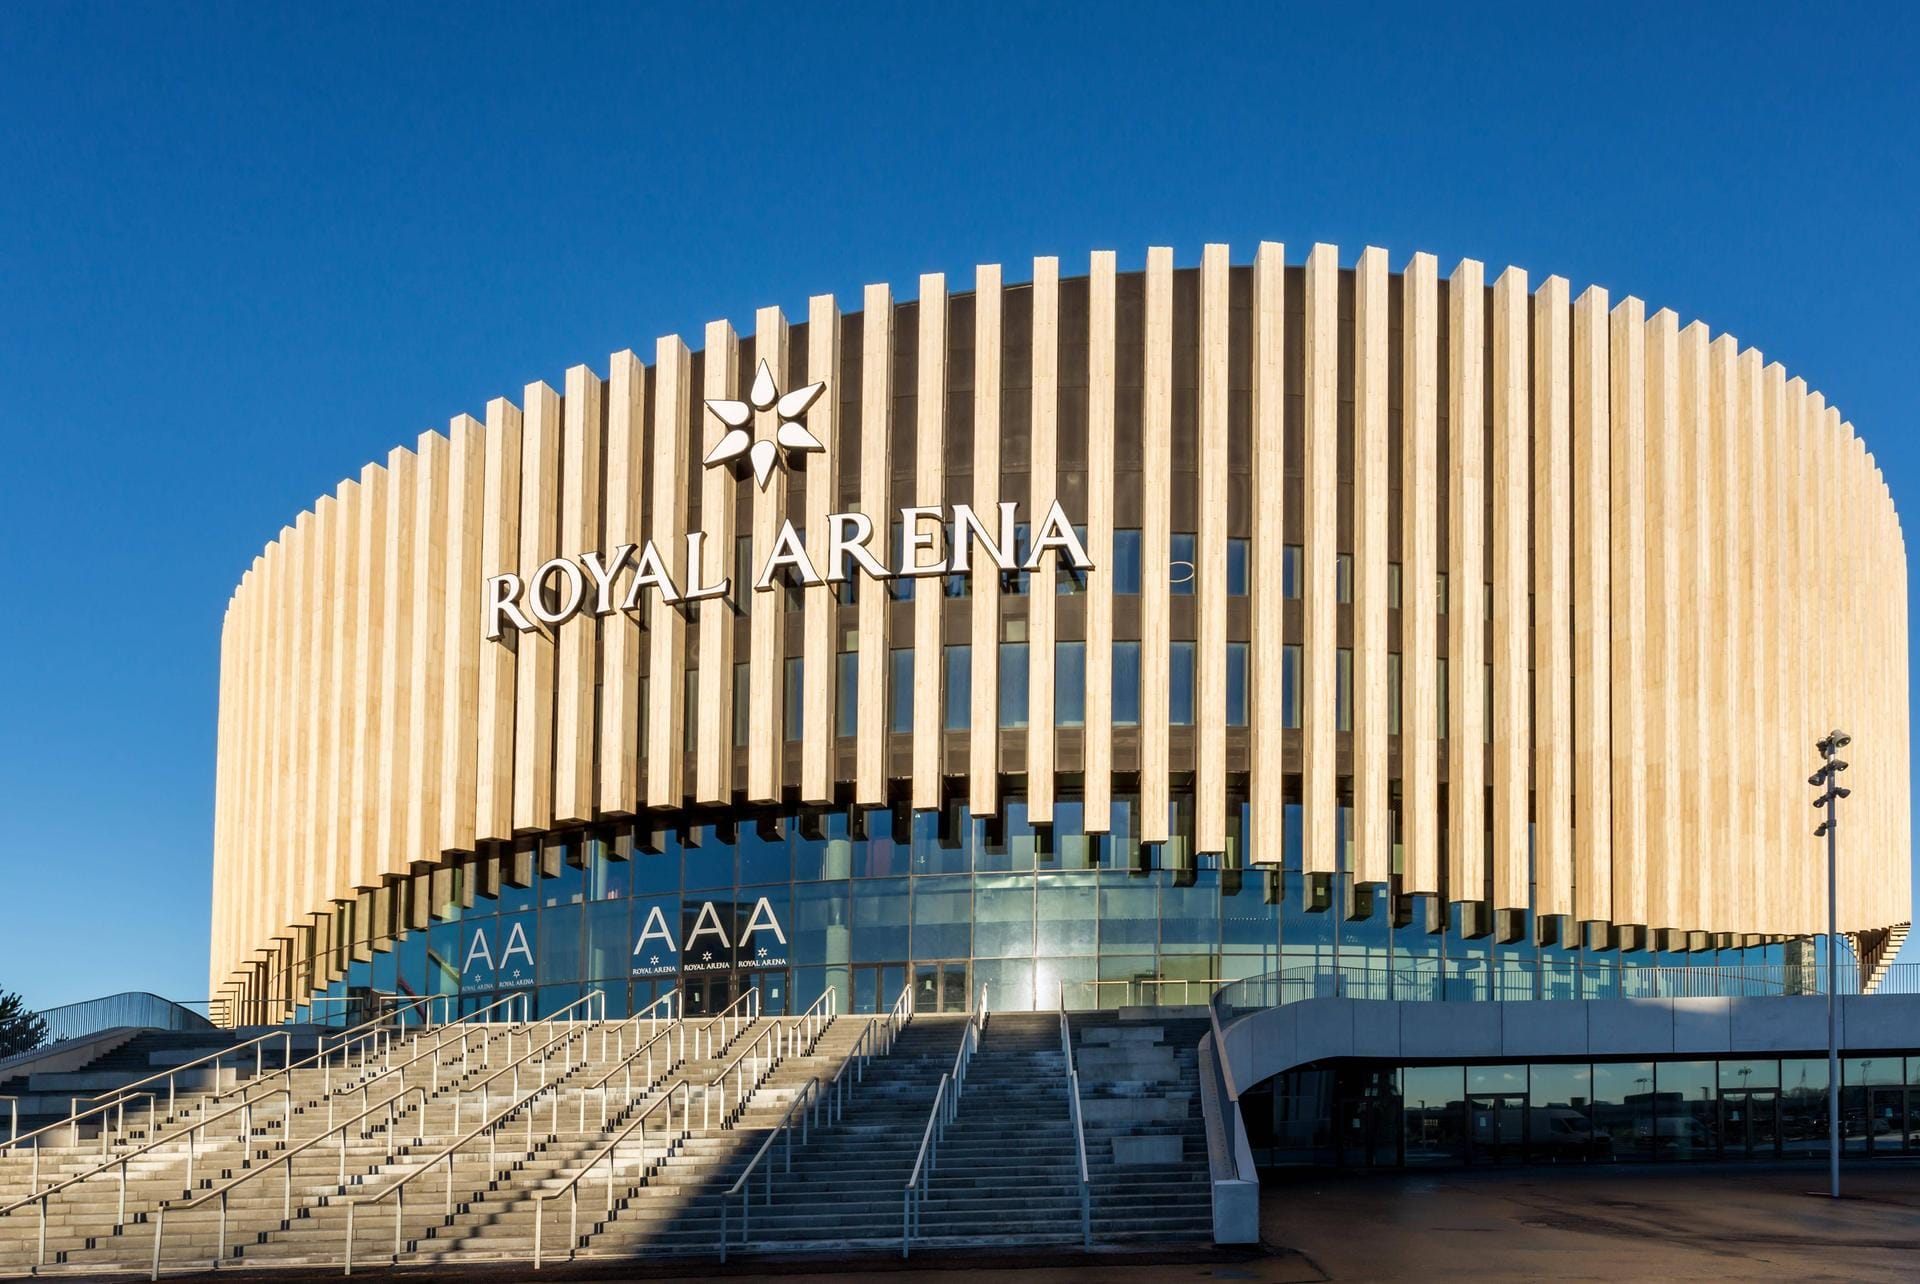 Royal Arena Kopenhagen (13.500 Zuschauer): In der dänischen Hauptstadt finden die Spiele der Gruppe D statt. Außerdem wird hier der Großteil des "President's Cup" (Platz 5 und 6) ausgetragen